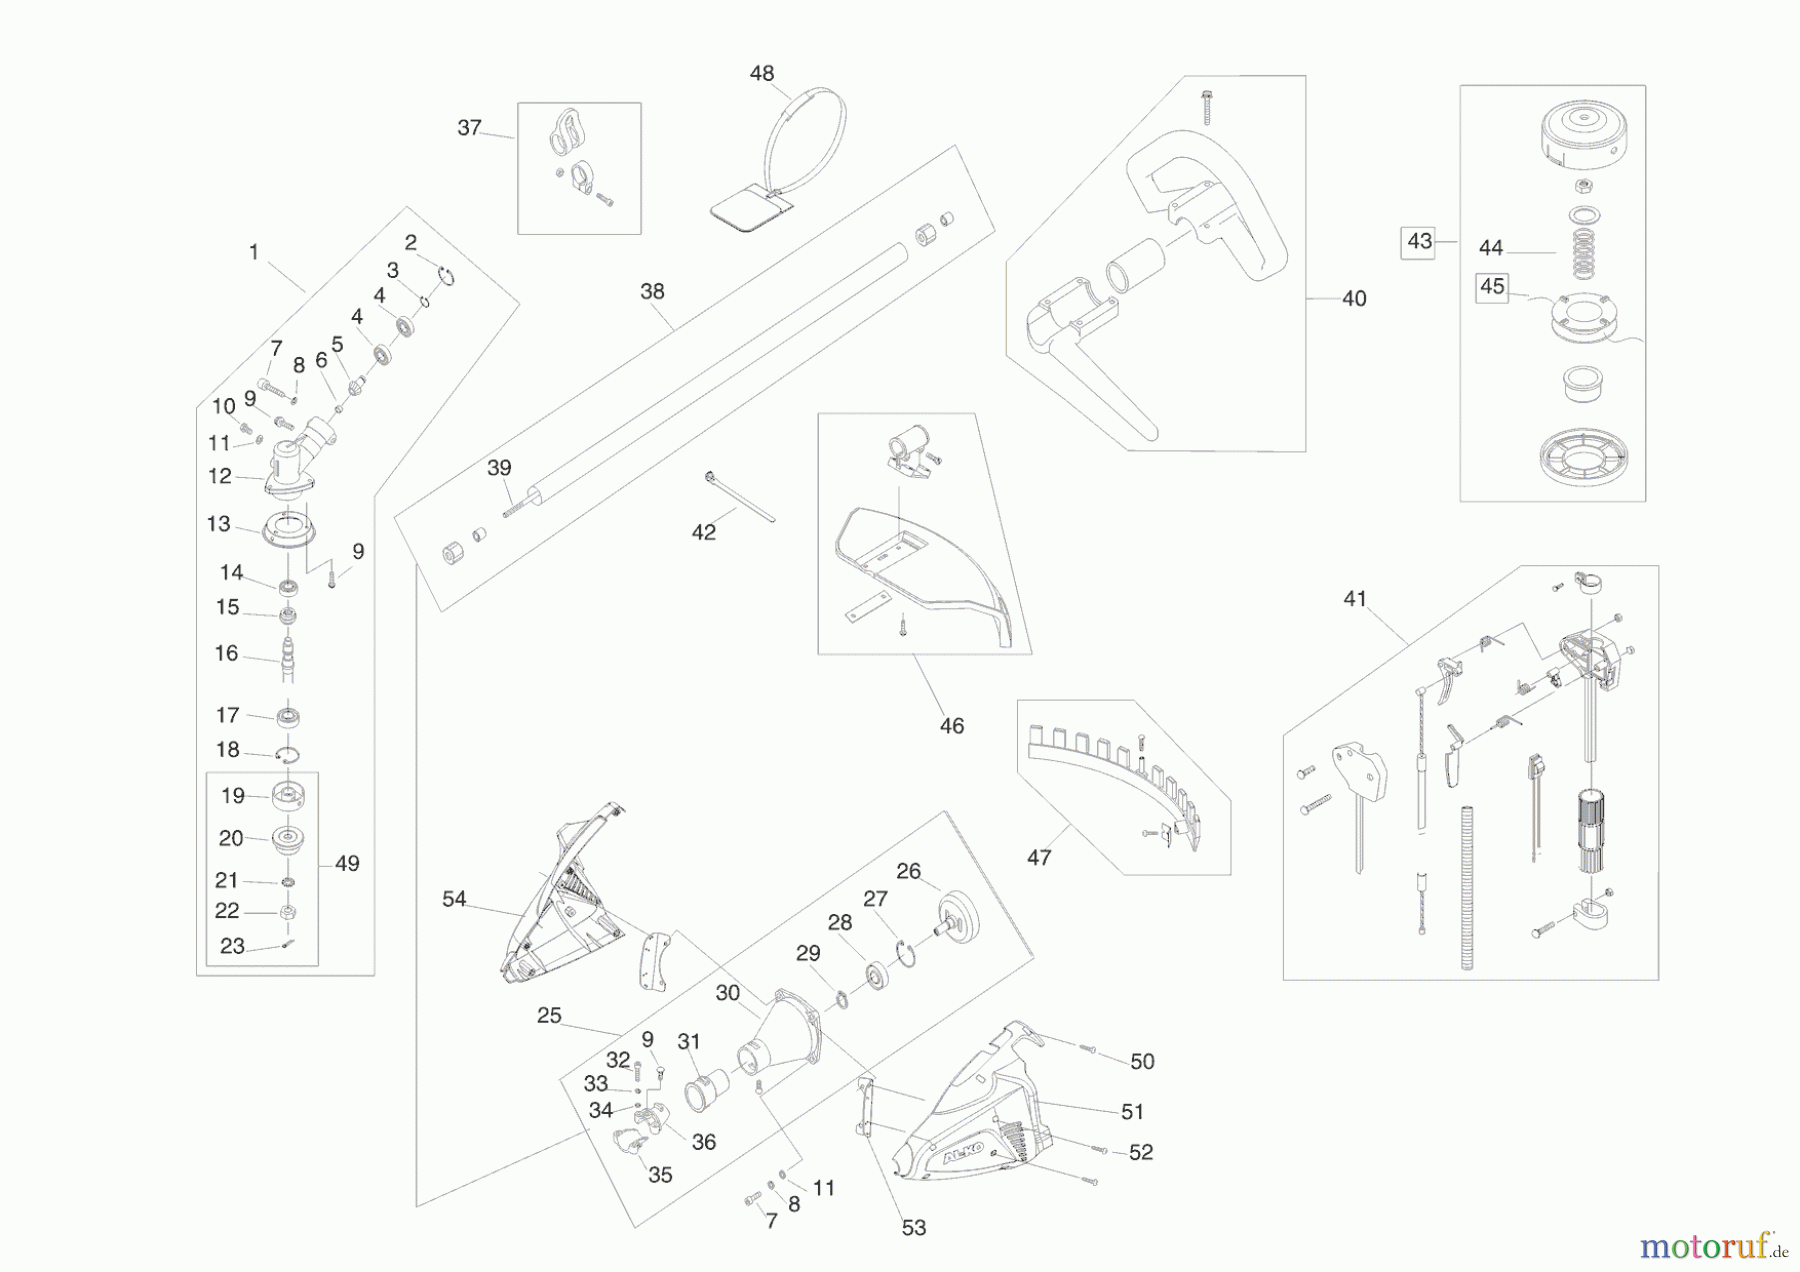  AL-KO Gartentechnik Motorsensen BC 410 Seite 1